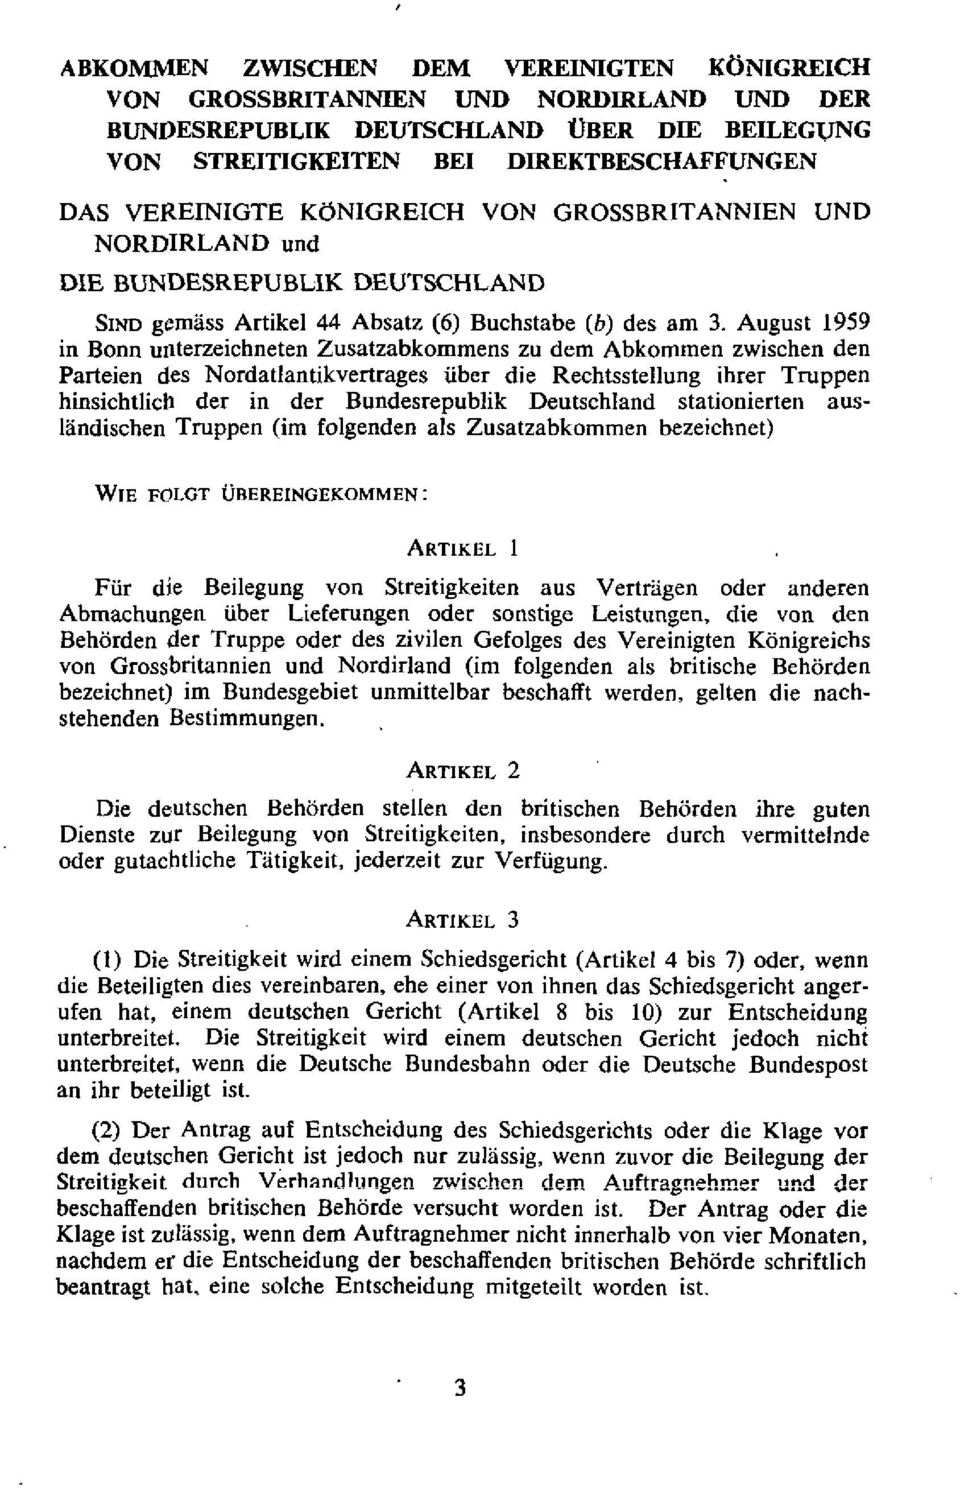 August 1959 in Bonn unterzeichneten Zusatzabkommens zu dem Ahkommen zwischen den Parteien des Nordatlantikvertrages iiber die Rechtsstellung ibrer Truppen binsichtlich der in der Bundesrepublik